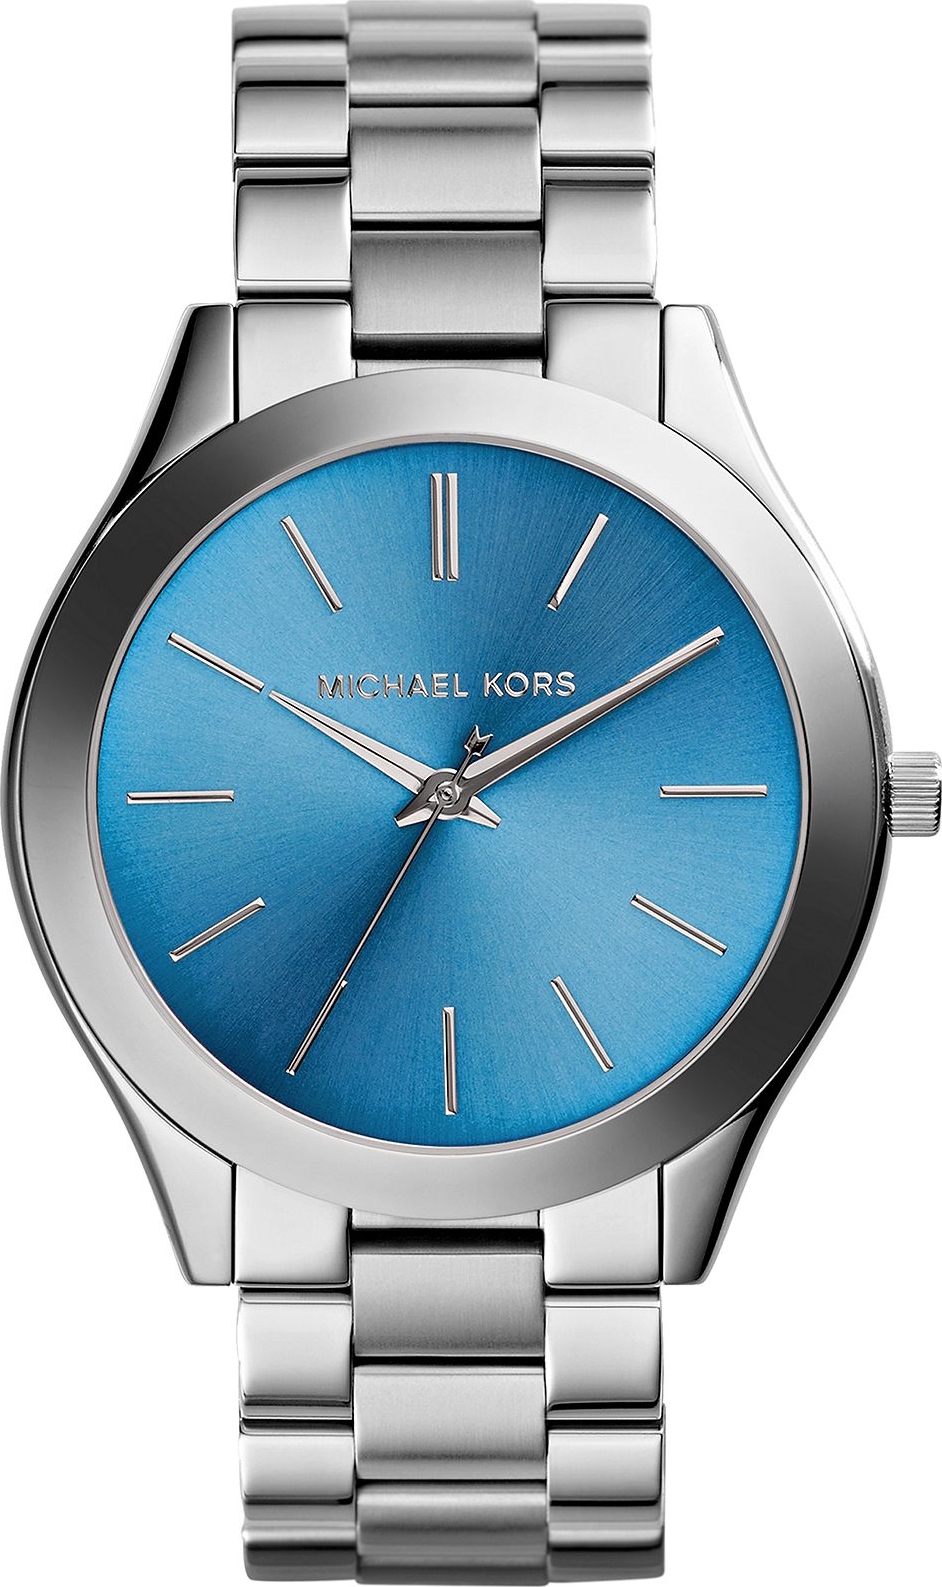 Đồng hồ dây da Michael Kors Jaycie Watch mới nhất